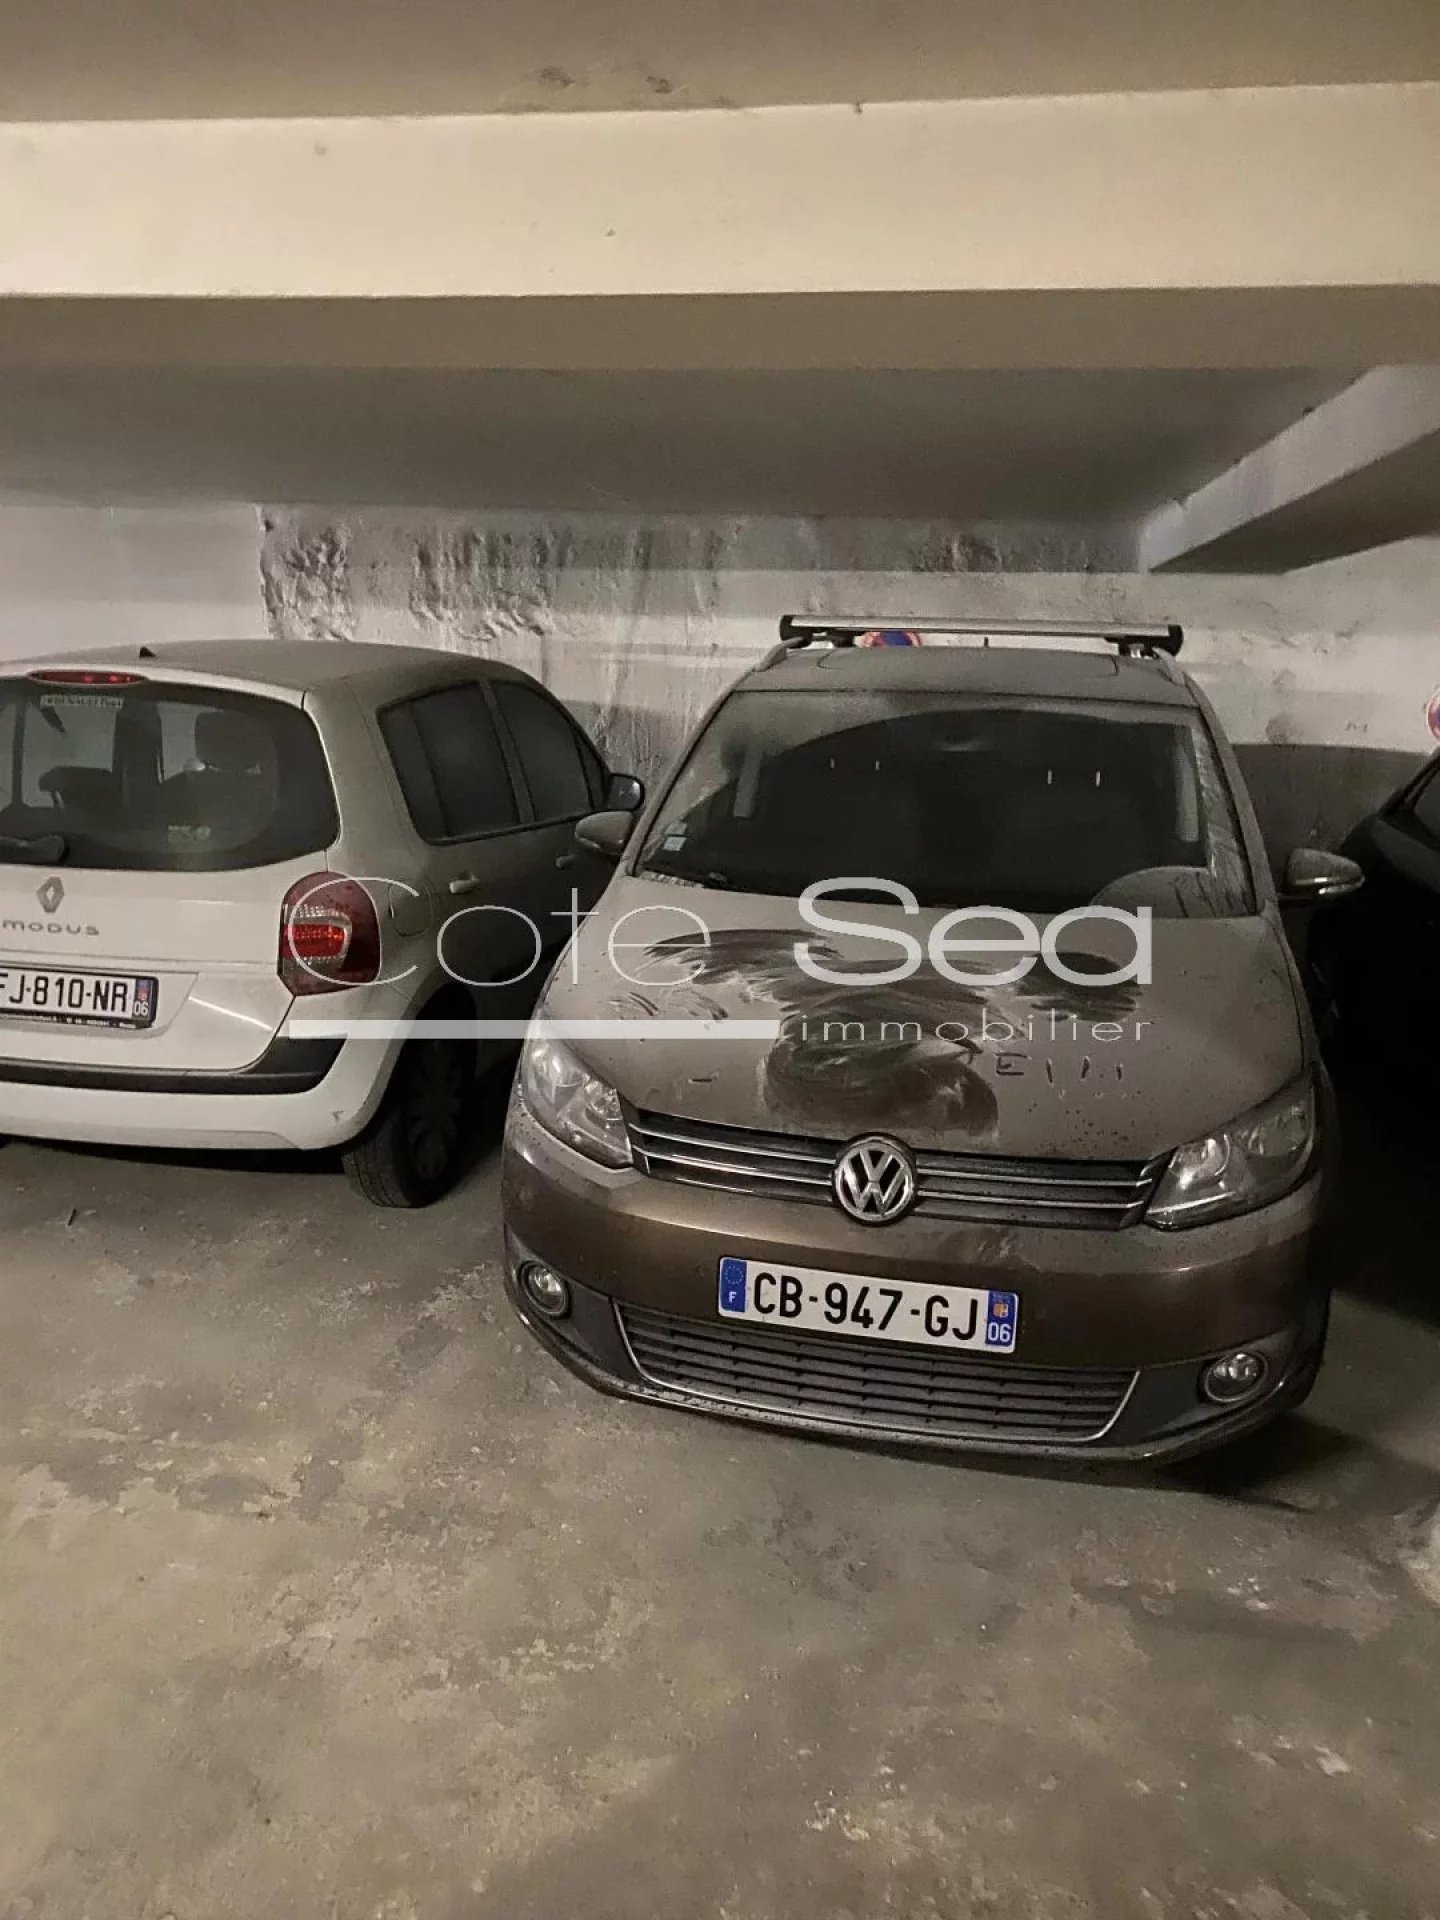 Vente Parking / Box à Nice (06000) - Cote Sea Immobilier